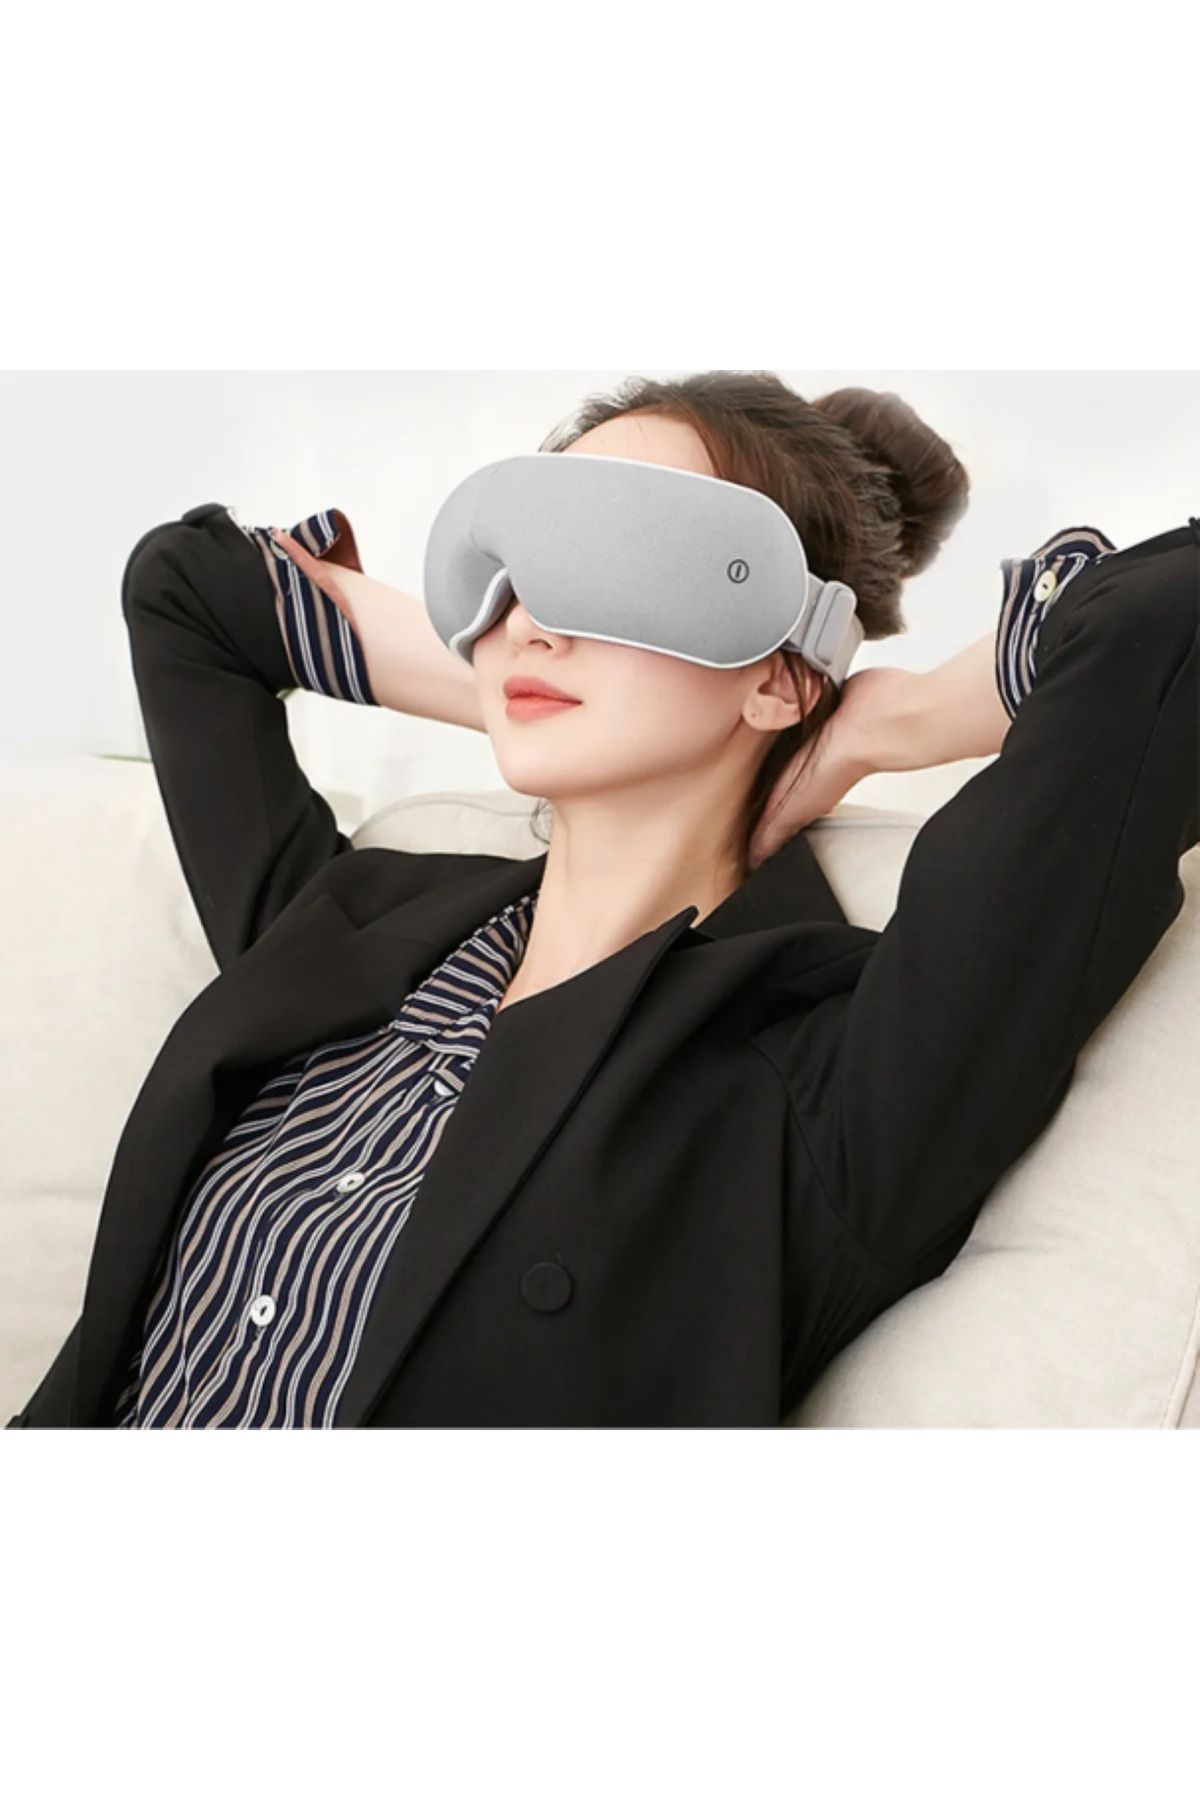 Protonust Sıcaklık Basınçlı Akıllı Uyku Terapi Şarjlı Göz Masaj Aleti Bluetooth Bağlantılı Masaj Makinesi